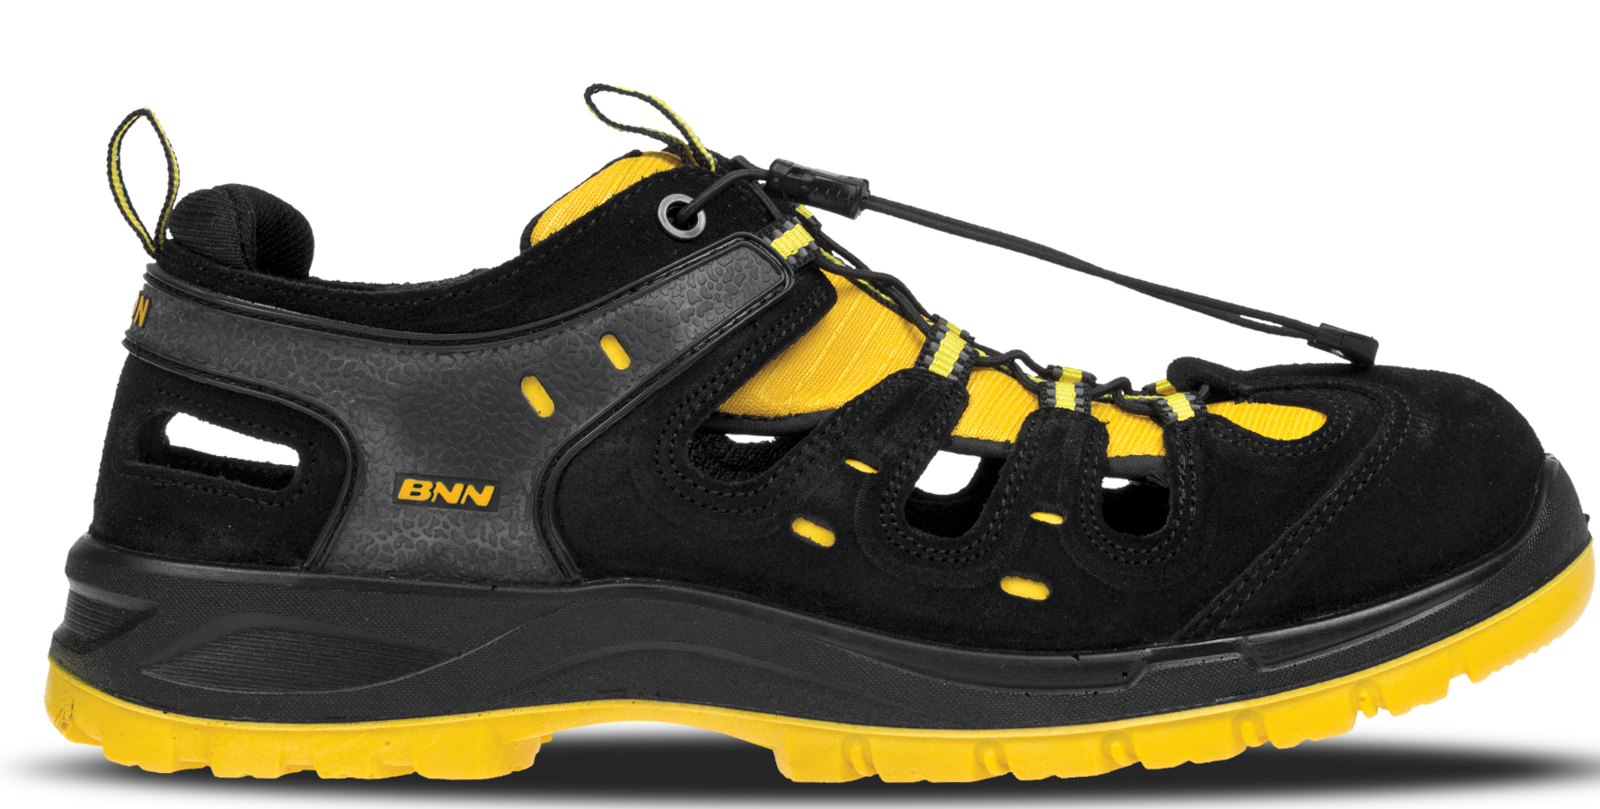 Bezpečnostné sandále Bombis lite NM S1 - veľkosť: 46, farba: žltá